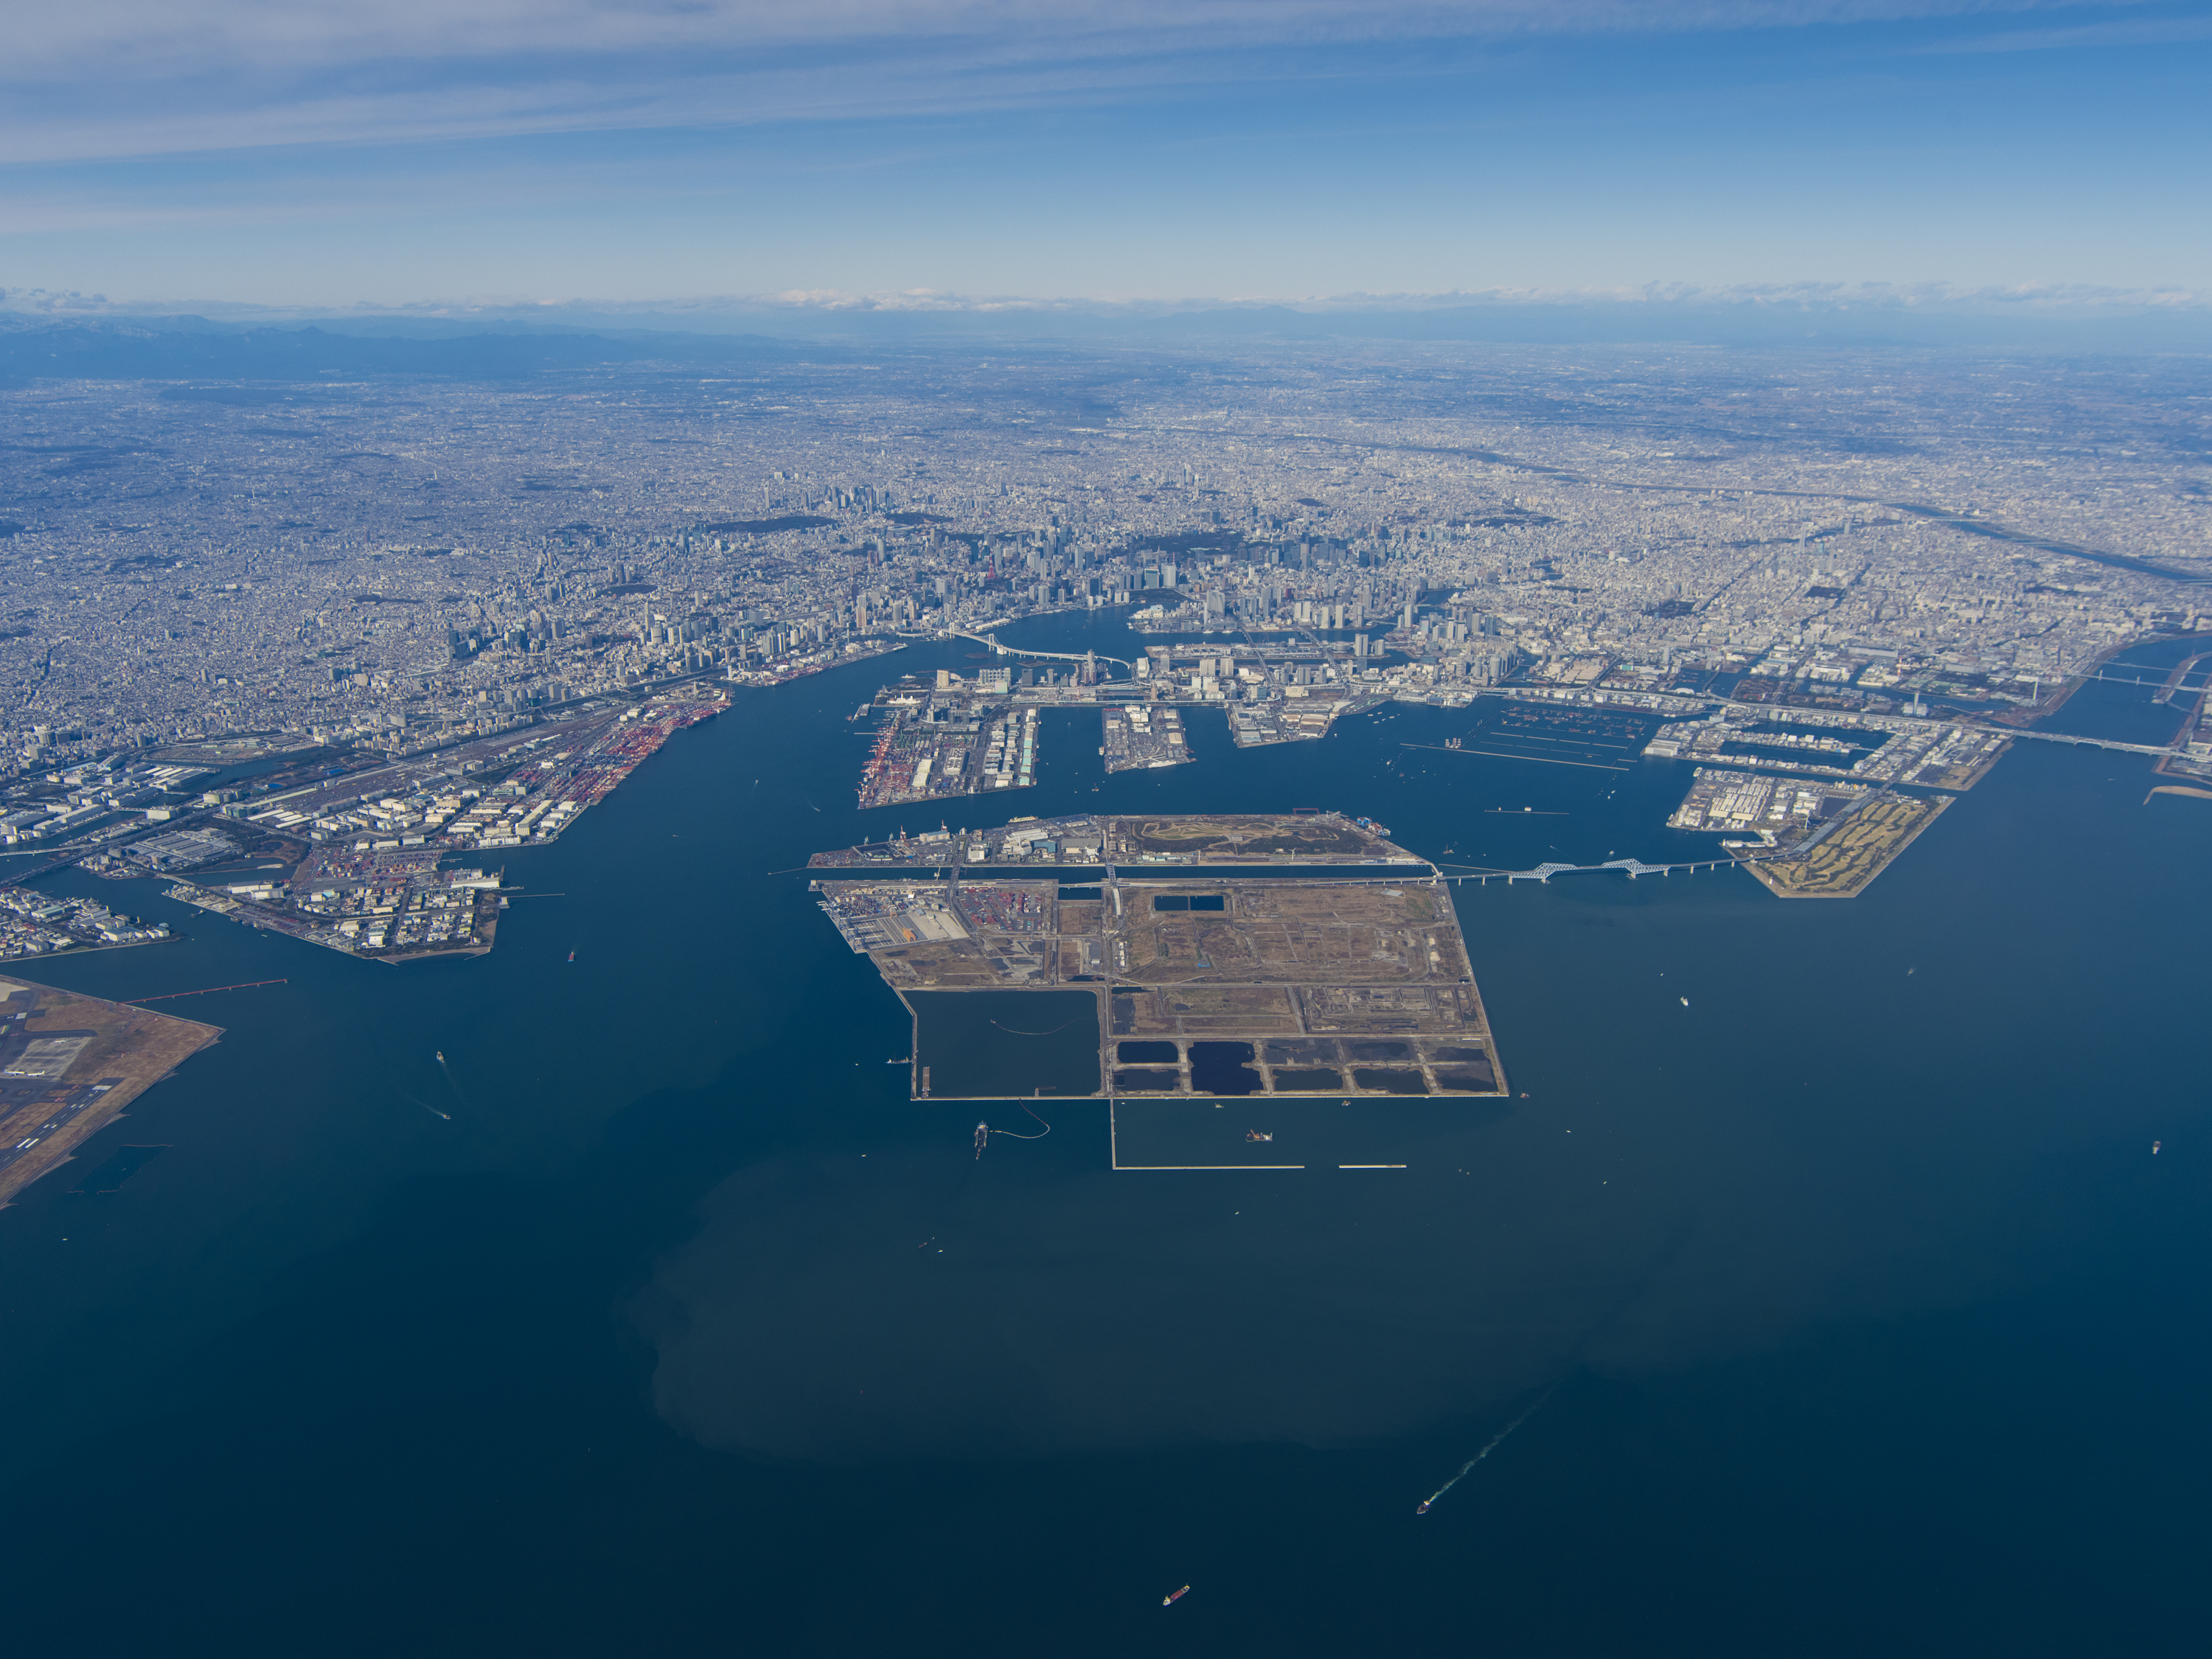 航空写真 東京都港湾局公式ホームページ